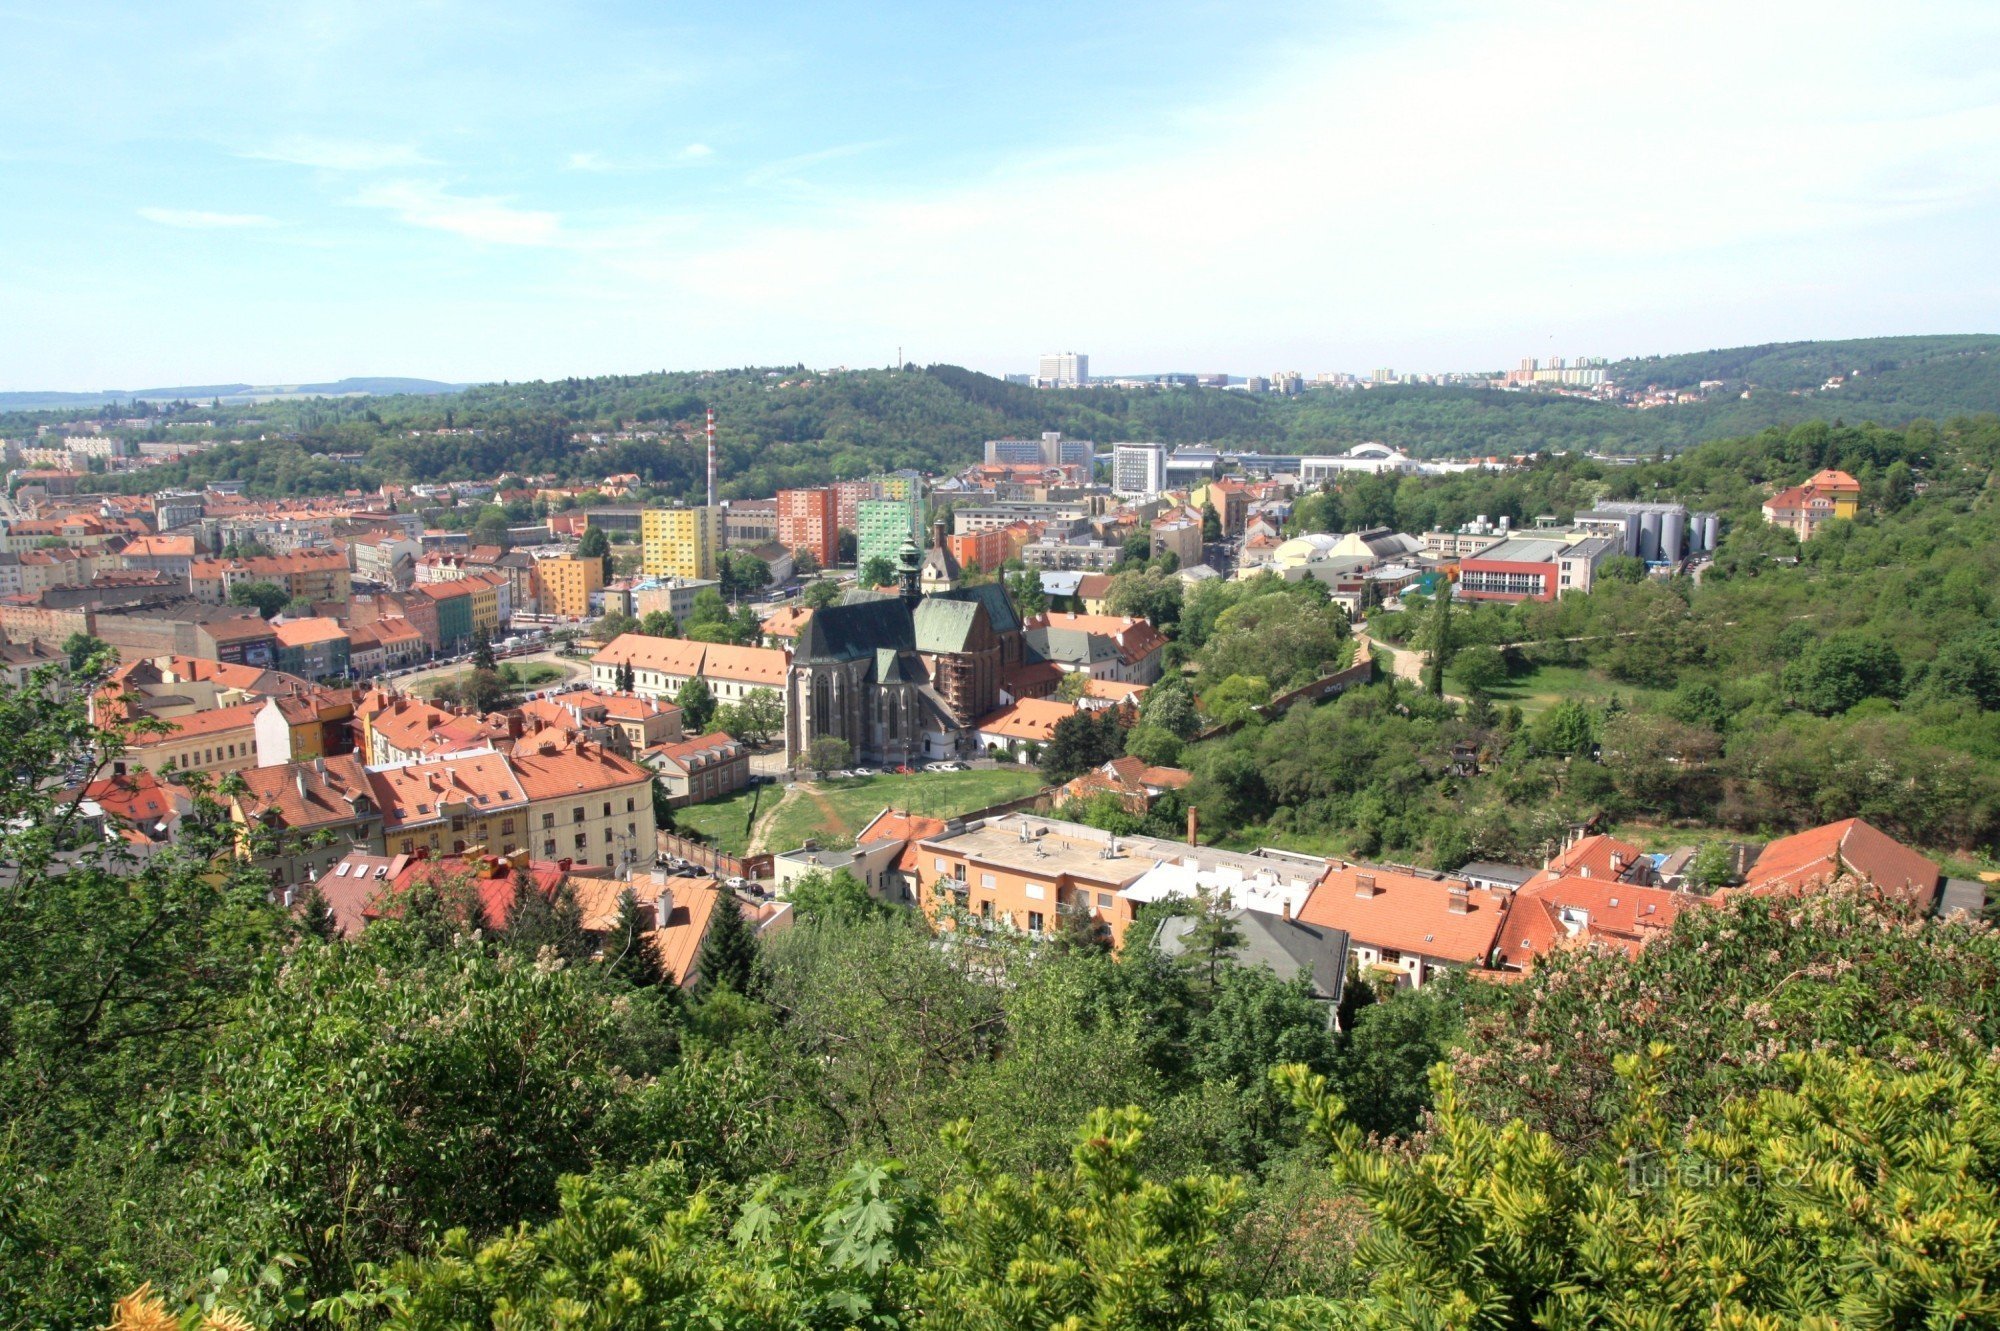 Blick auf einen Teil der Altstadt von Brünn und das Messegelände